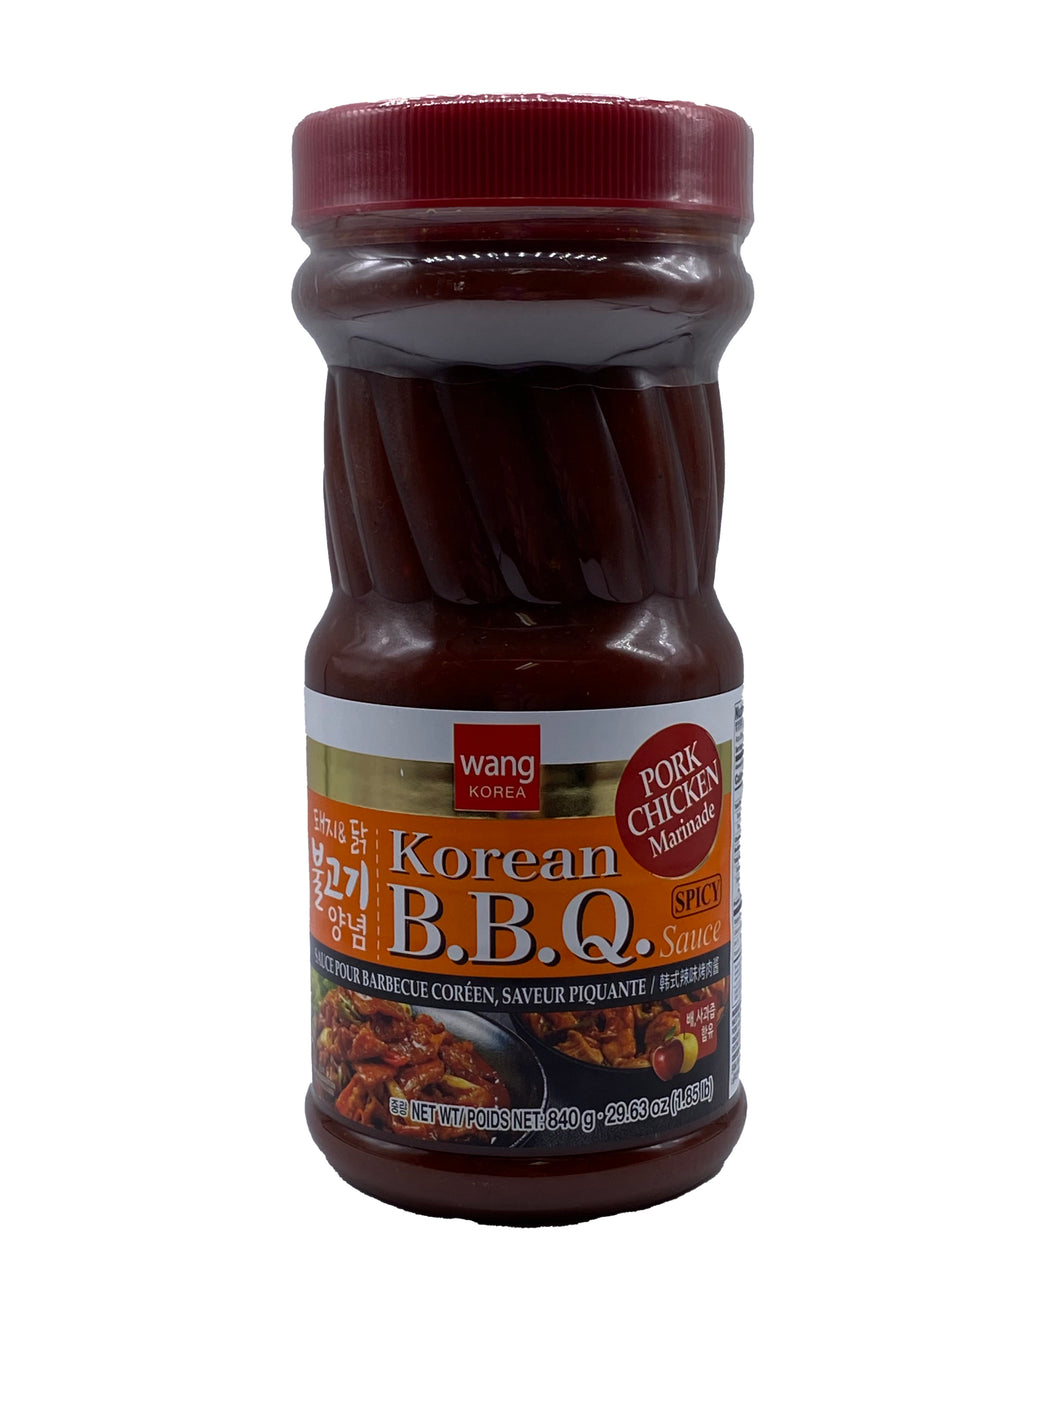 Wang Korean B.B.Q Sauce Spicy